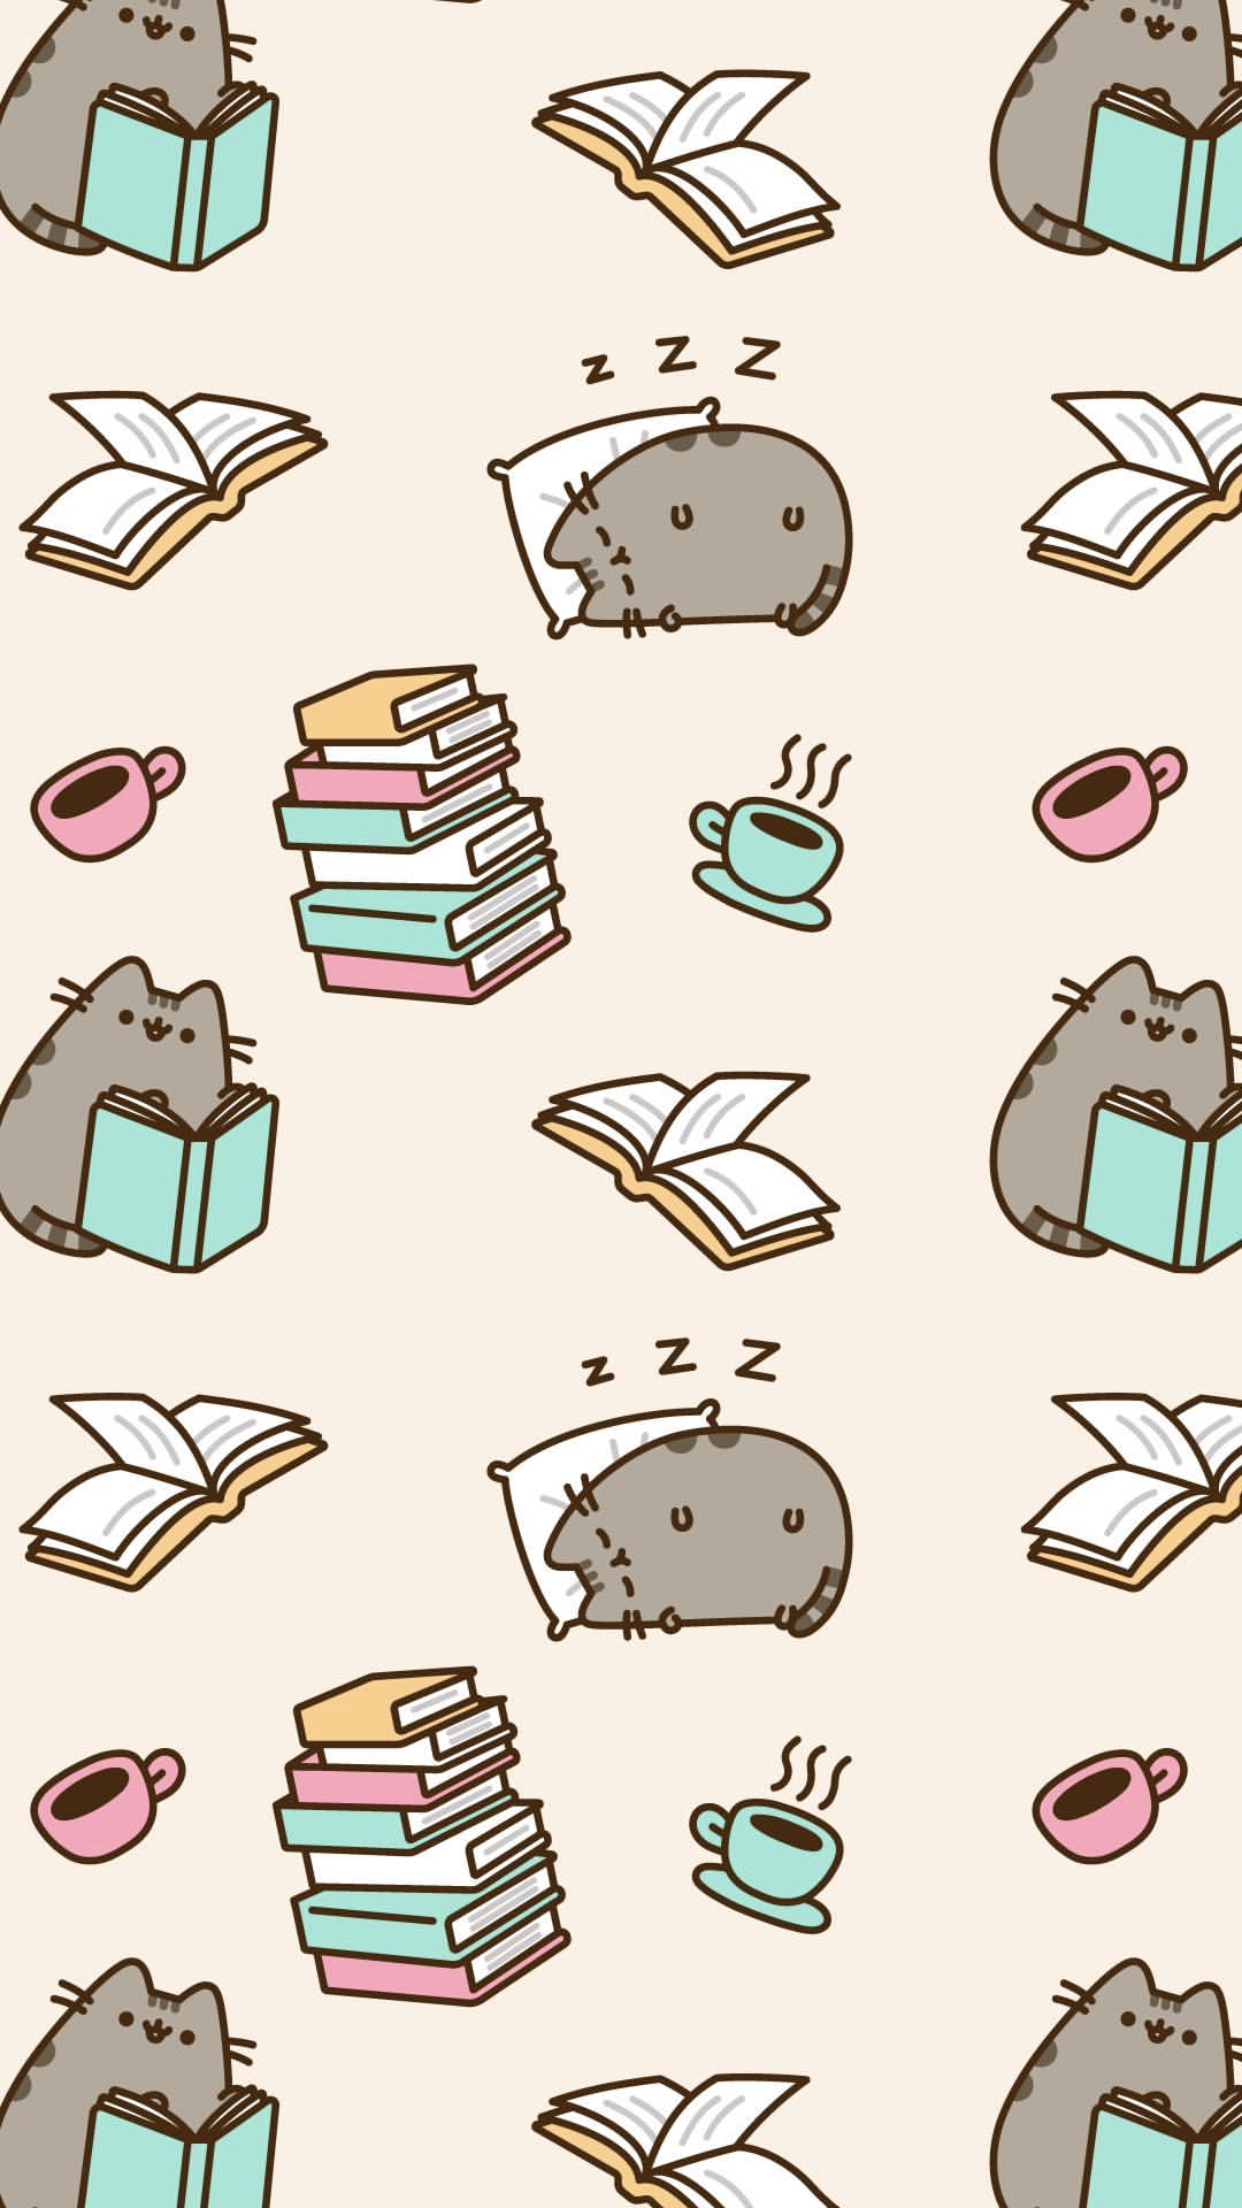 pusheen the cat iphone wallpaper. Pusheen cat, Pusheen cute, Cute